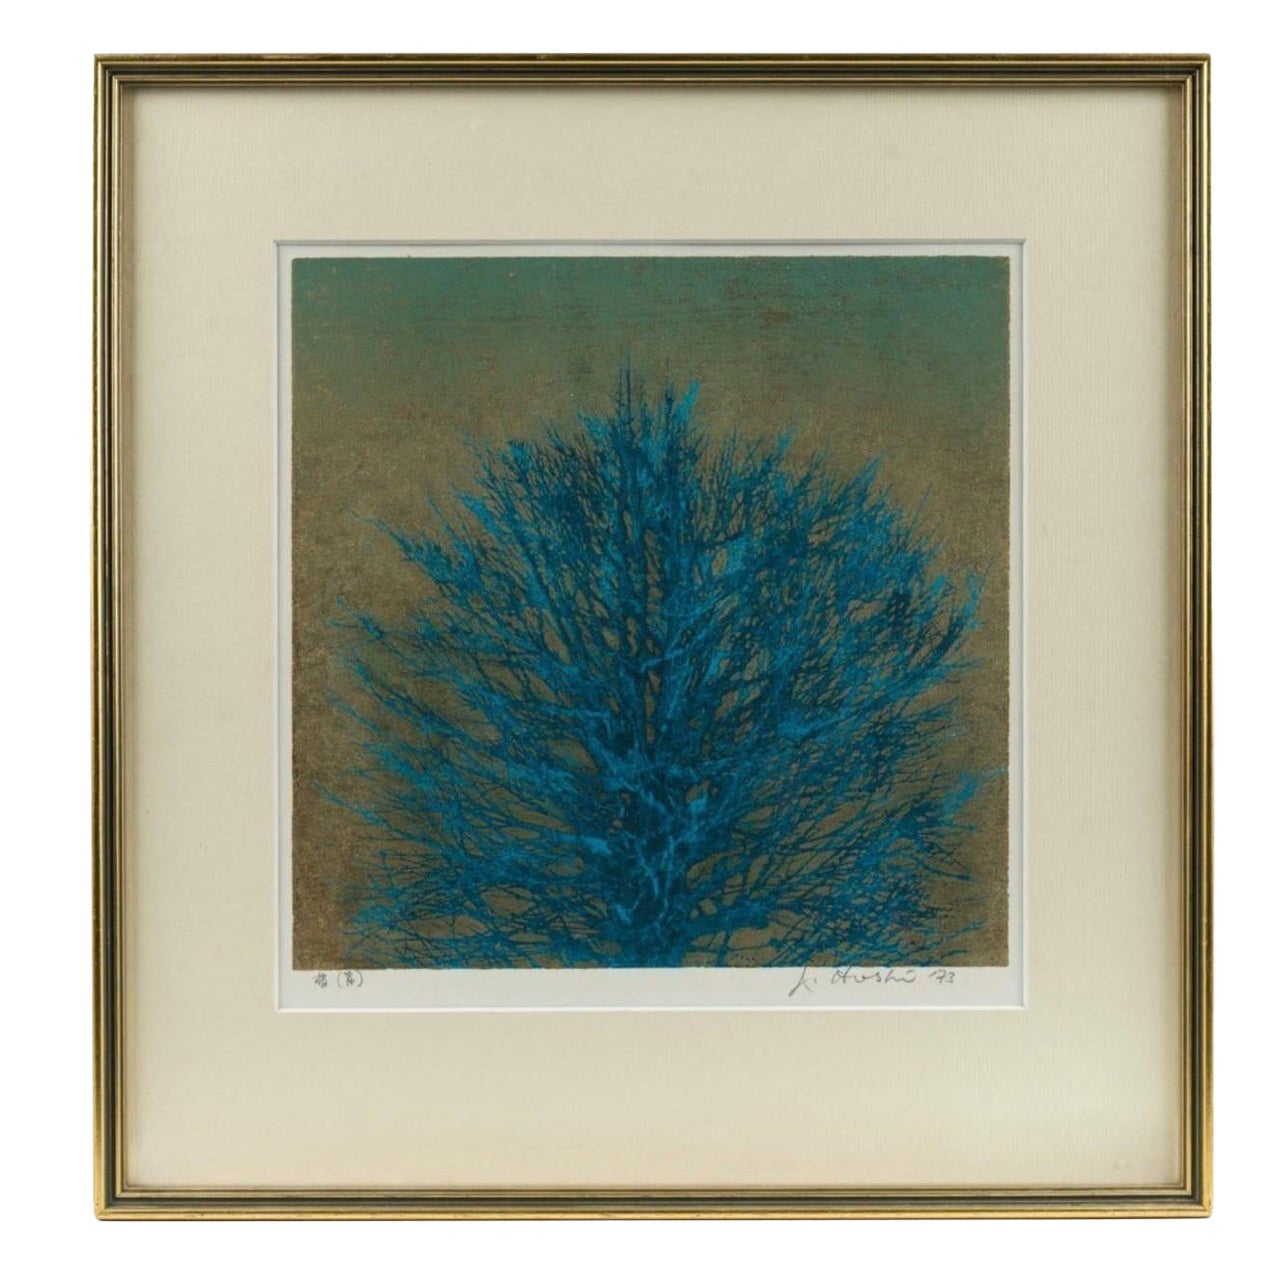 JOICHI HOSHI (1911-1979), arbre bleu, bloc de bois, signé en bas à droite, daté de 1973